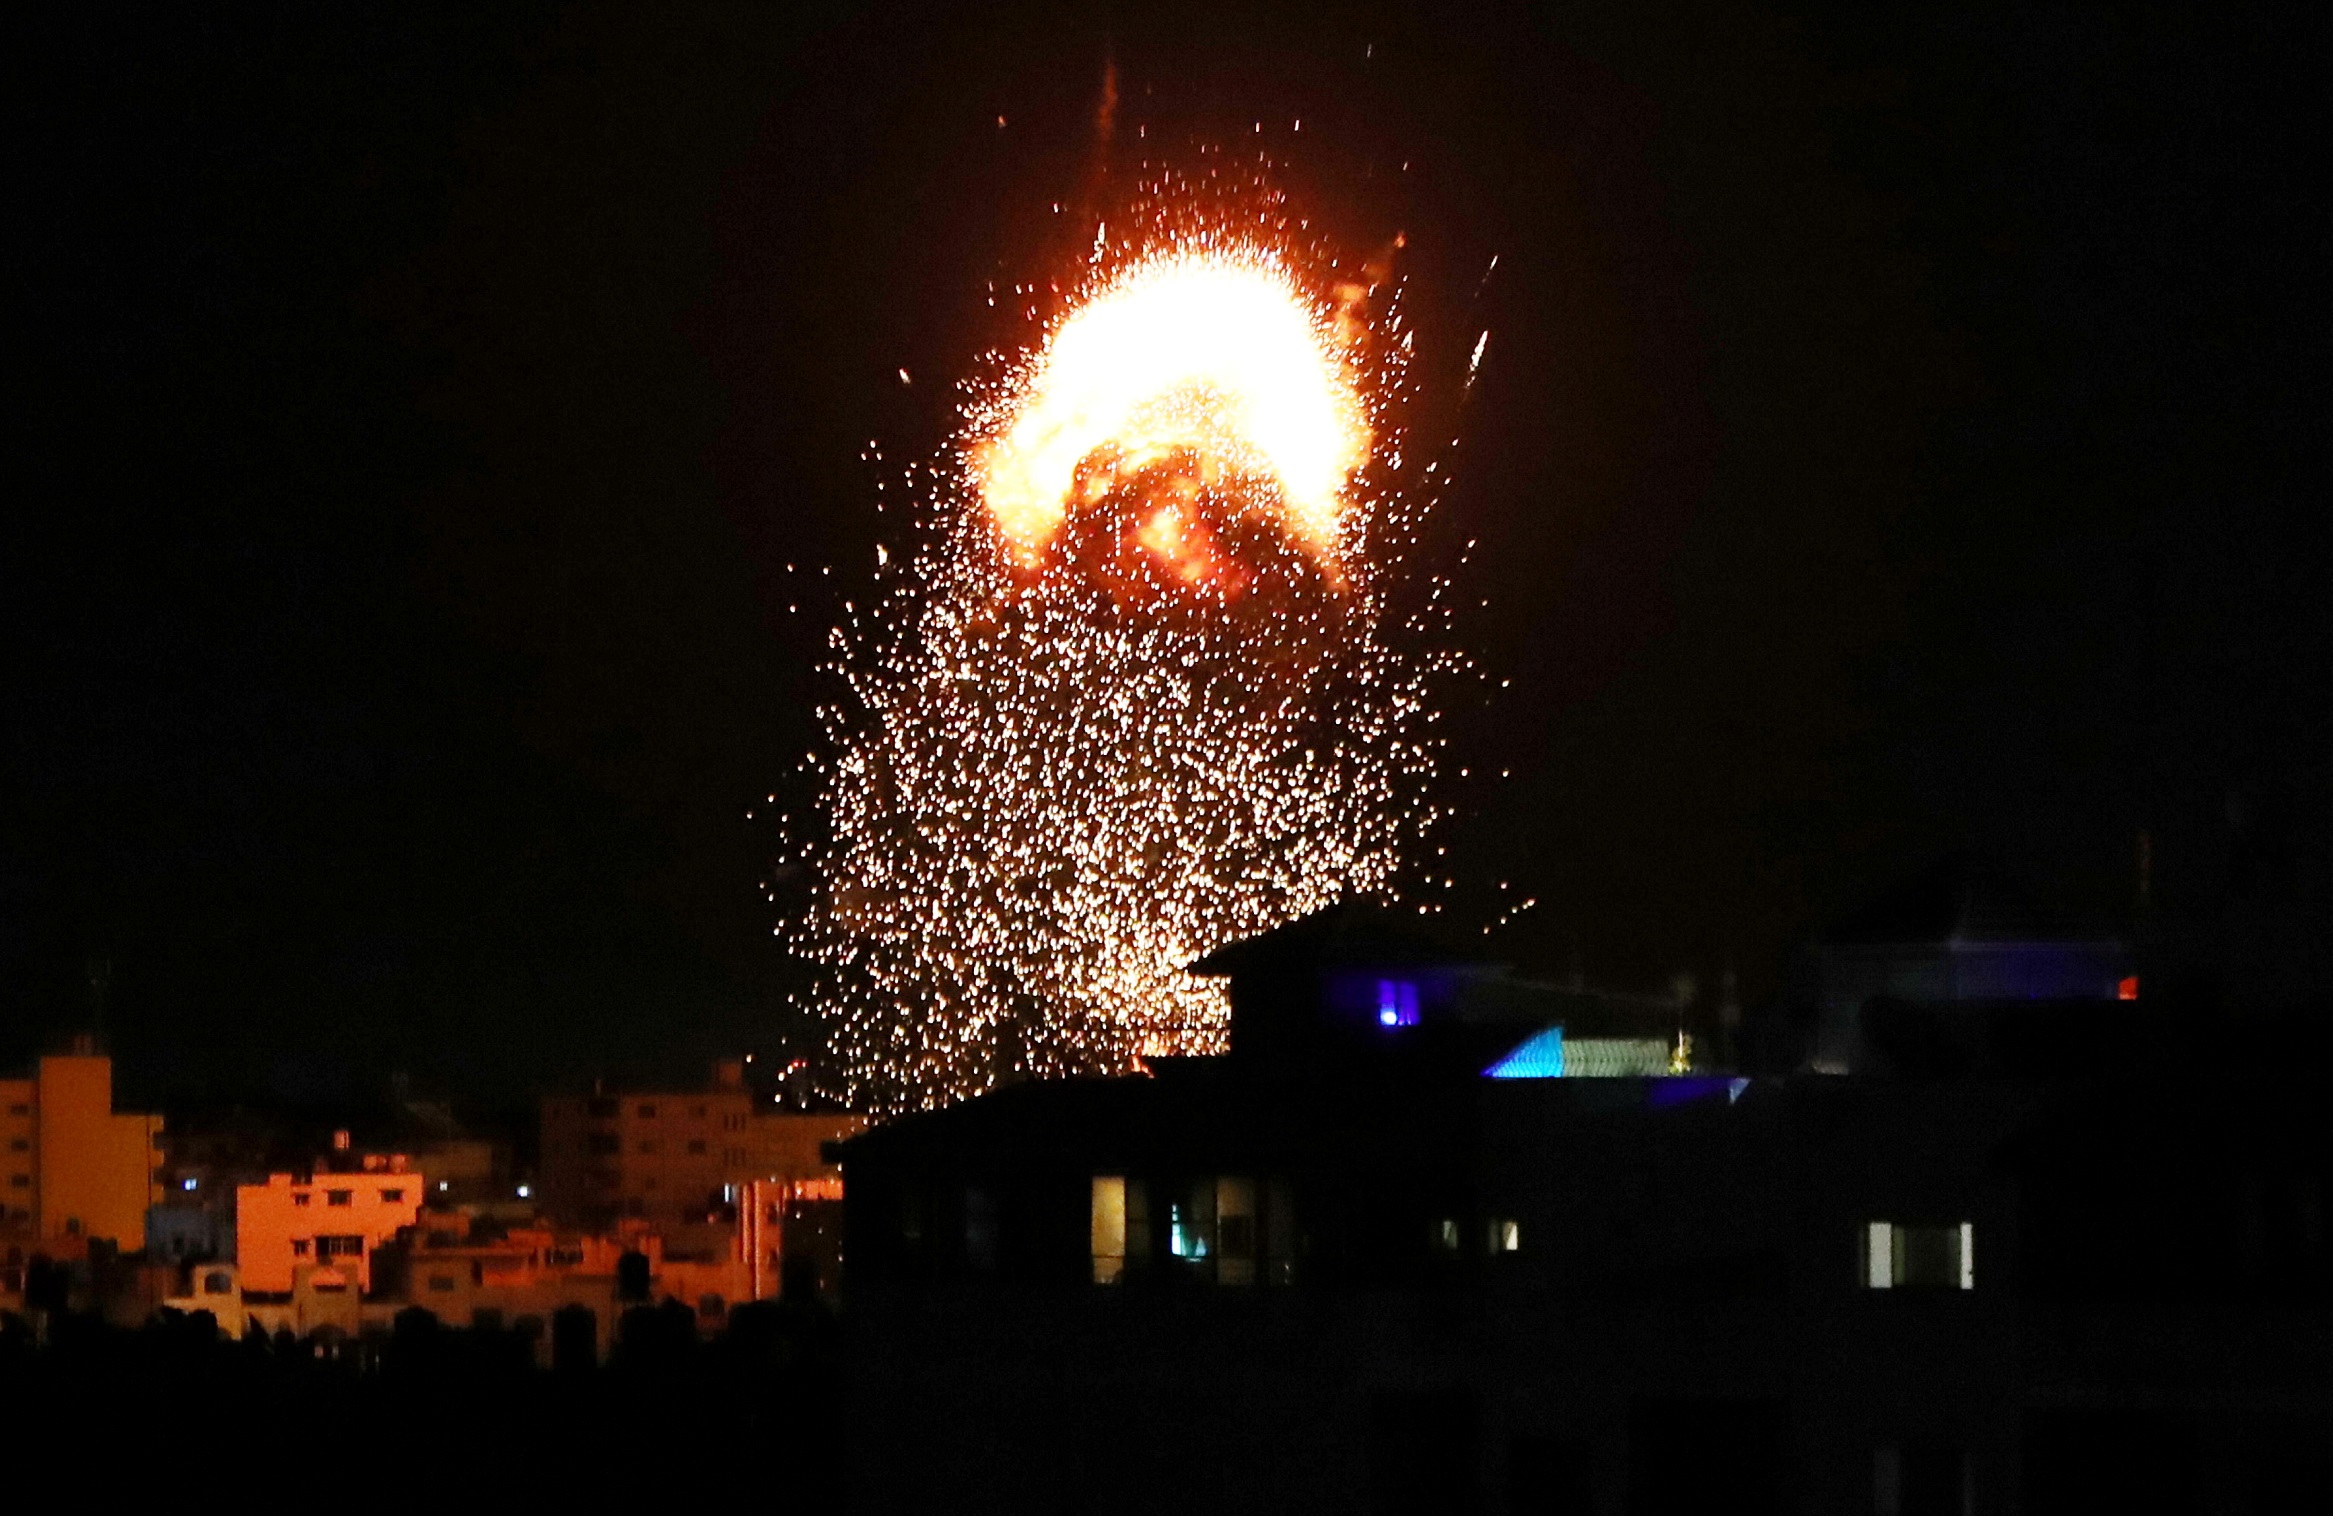 دخان ونيران متصاعدة فوق مبنى في مدينة غزة بعد قصف إسرائيلي، 17 أيار/مايو 2021. (محمد سالم/رويترز)